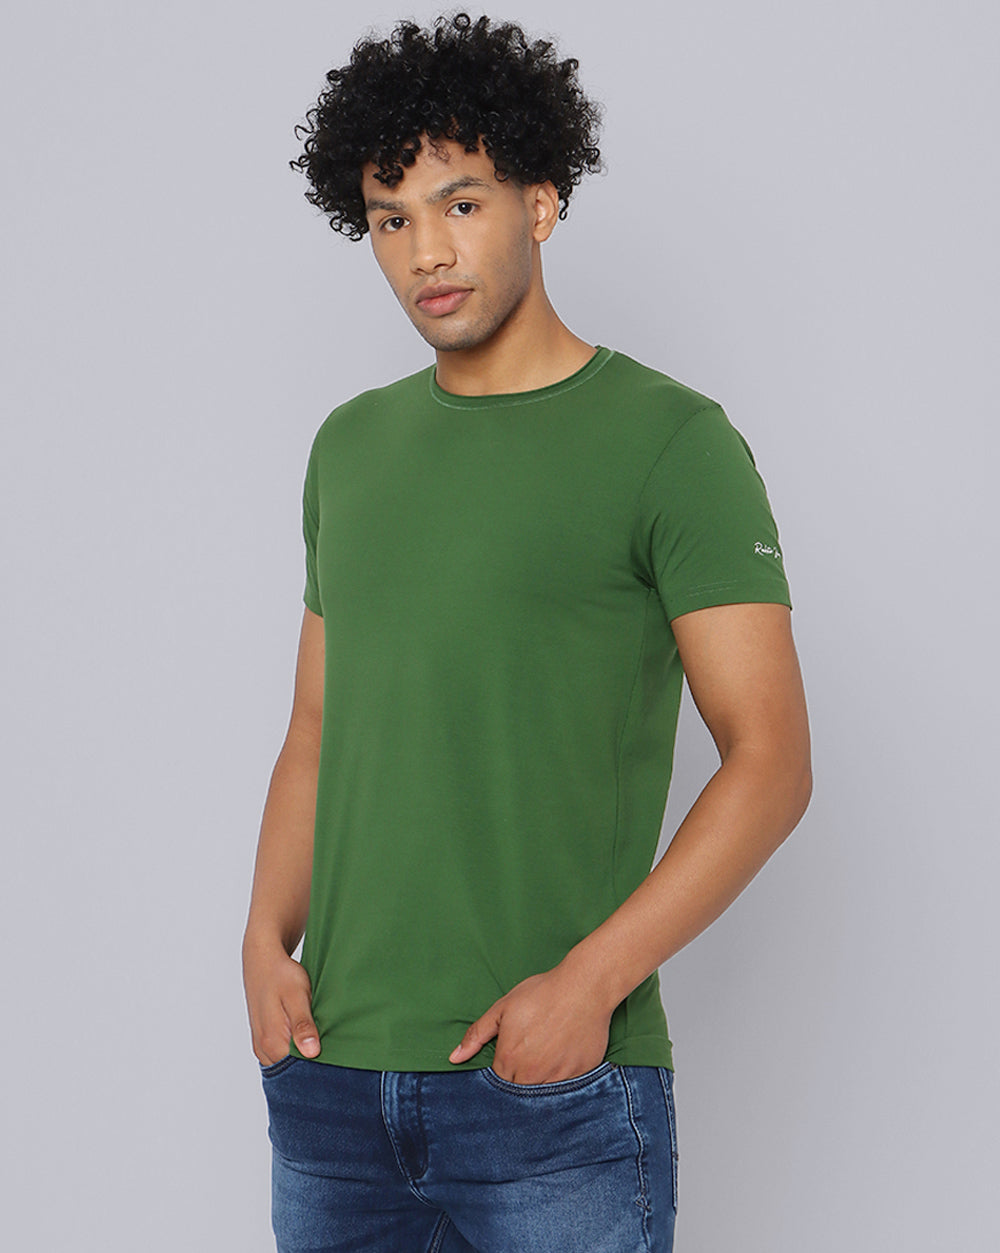 Crewneck Comfort Strech T-Shirt-Forest Green